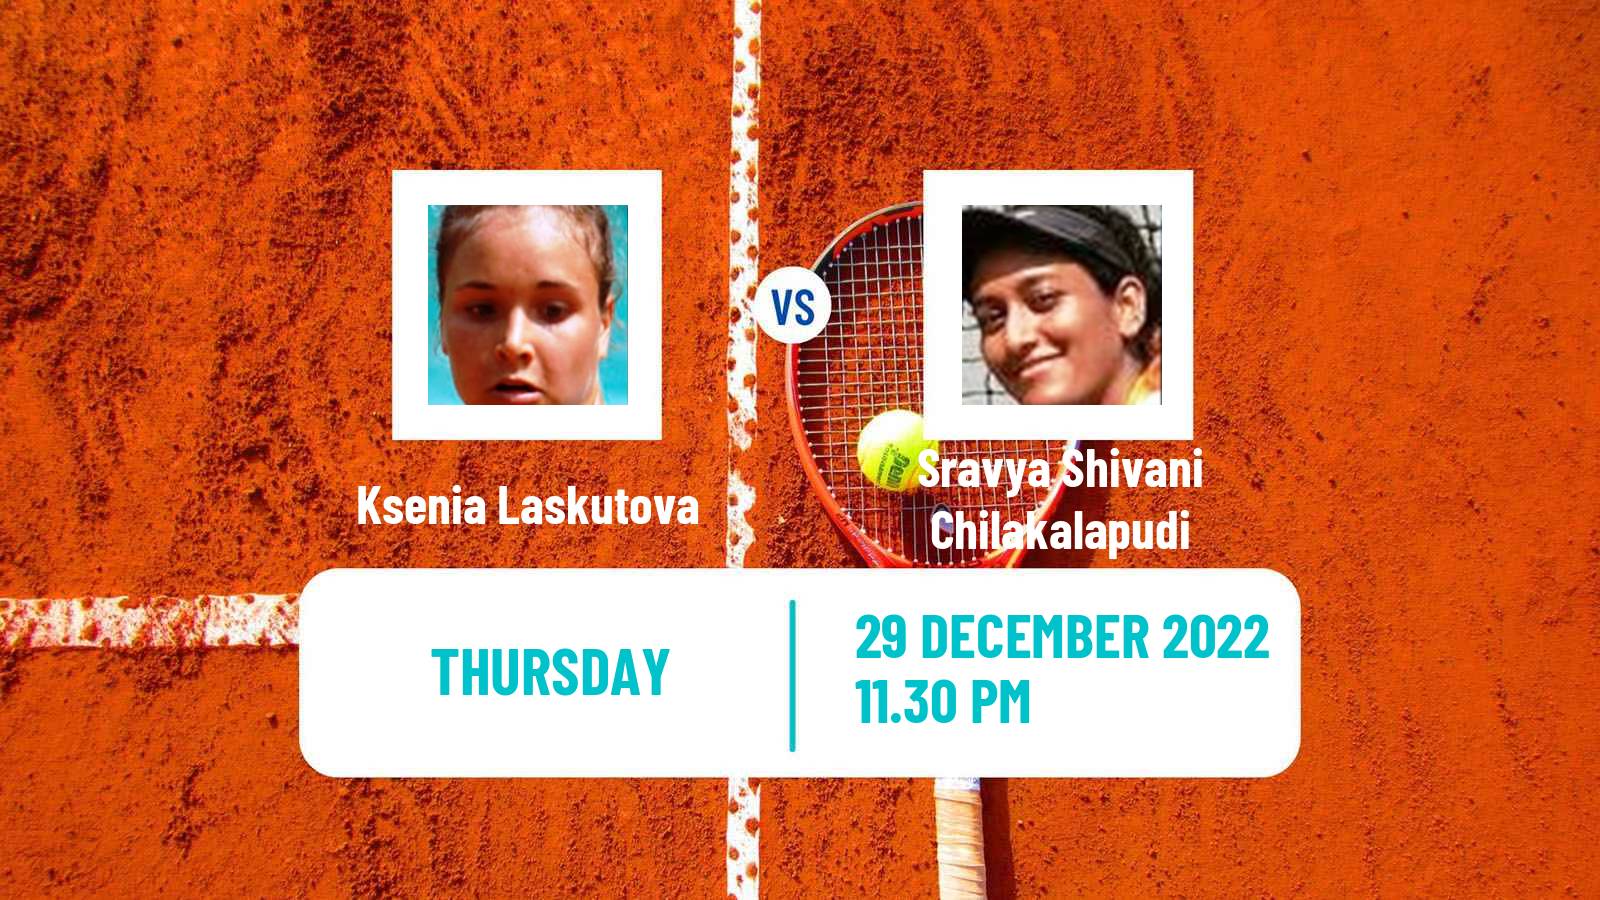 Tennis ITF Tournaments Ksenia Laskutova - Sravya Shivani Chilakalapudi